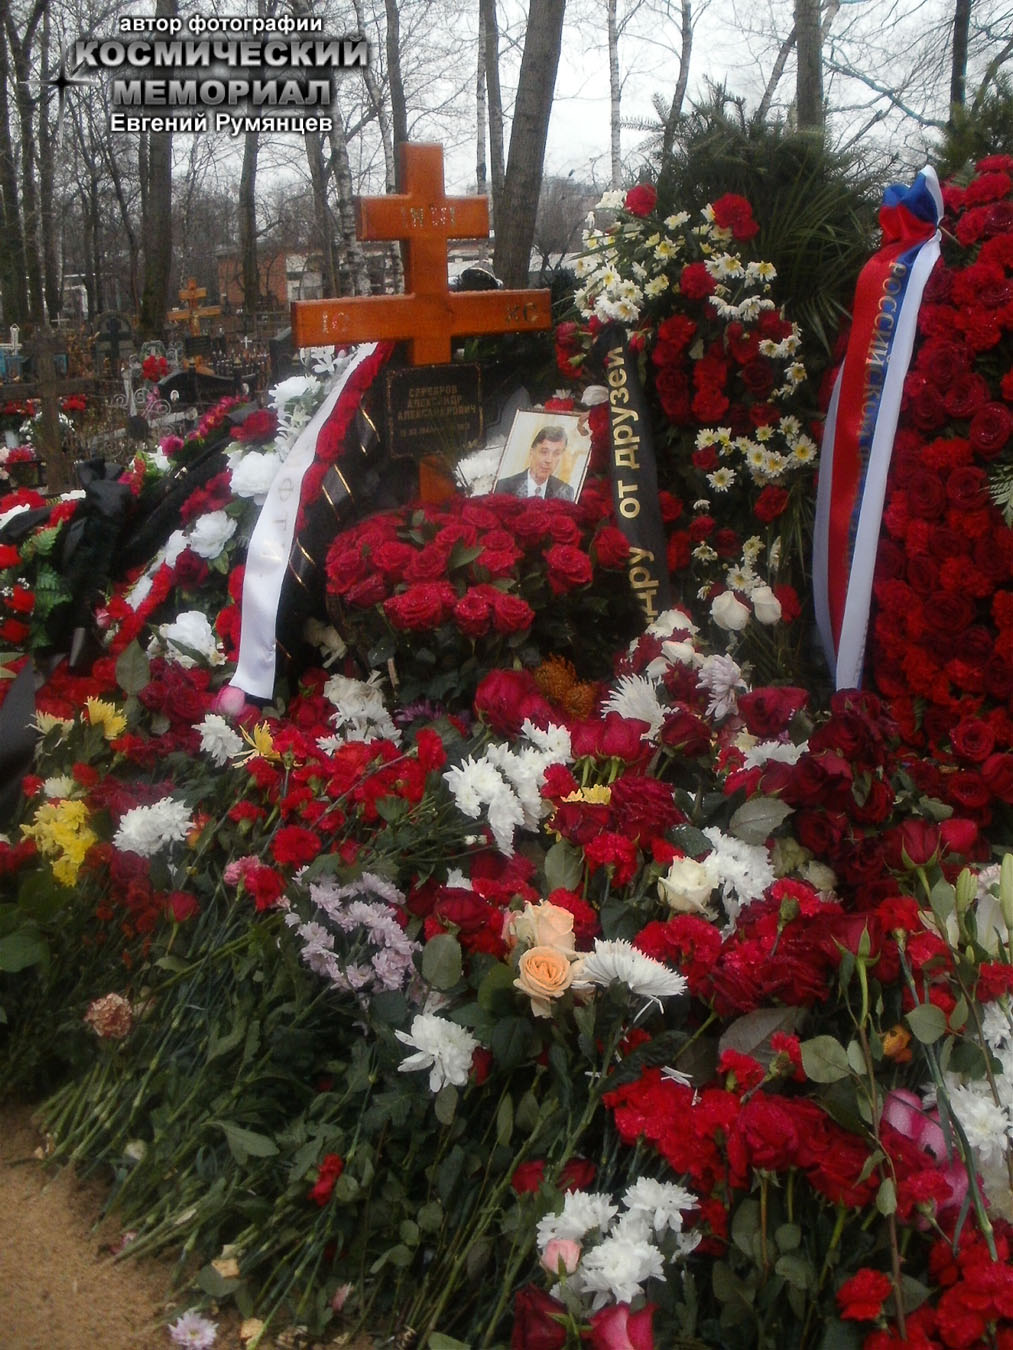 г. Москва, Останкинское кладбище. Могила А.А. Сереброва после похорон (ноябрь 2013 года)